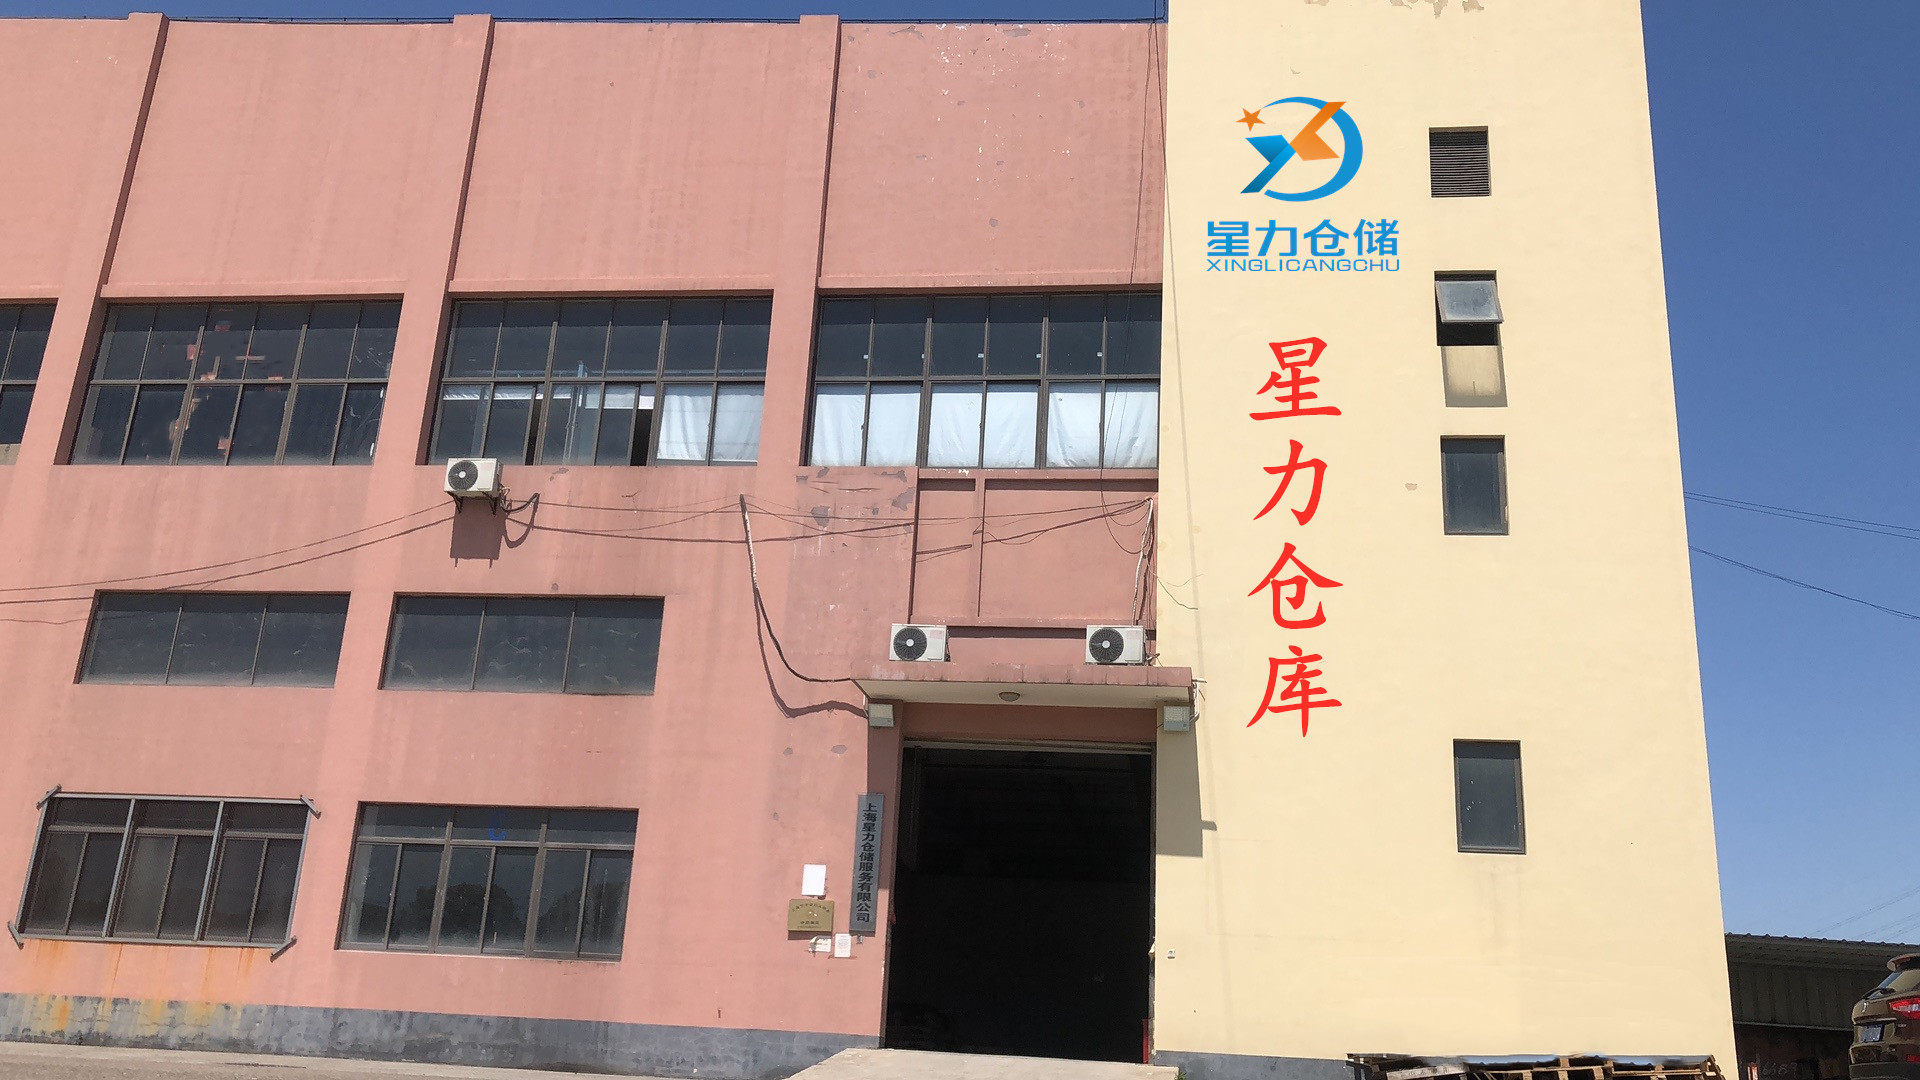 临时仓库托管,上海电商仓储外包,面积按需